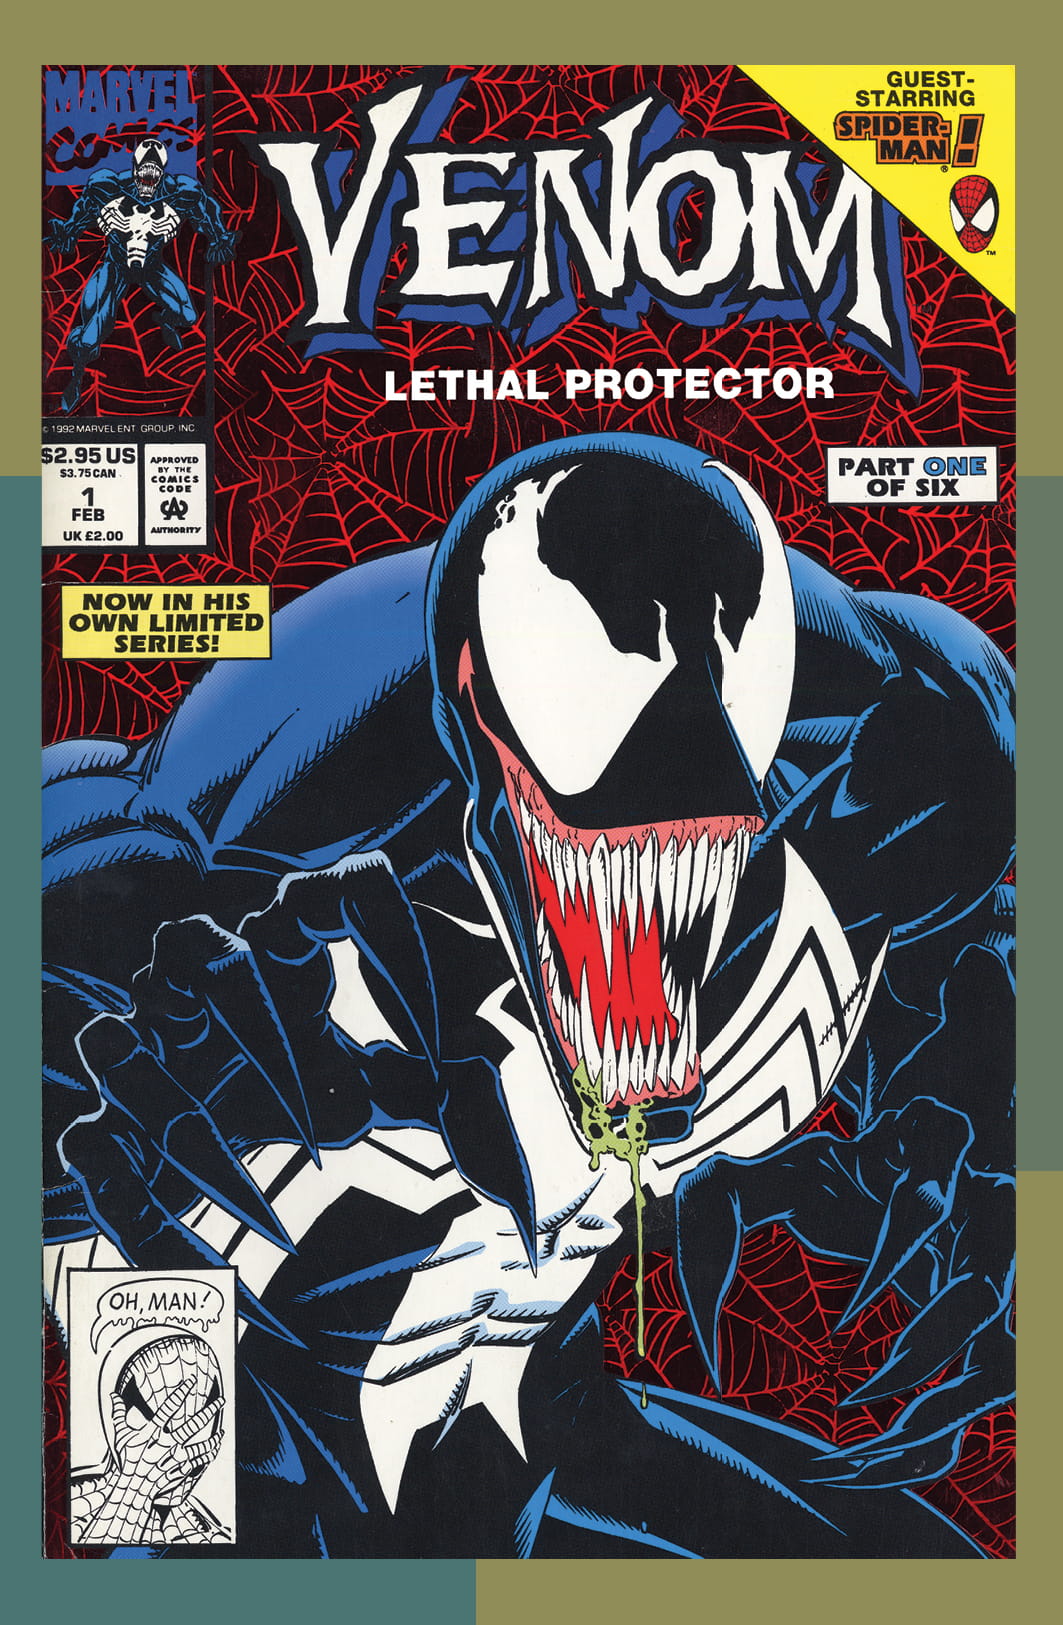 Premiery komiksowe - listopad 2022, Venom - zabójczy obrońca